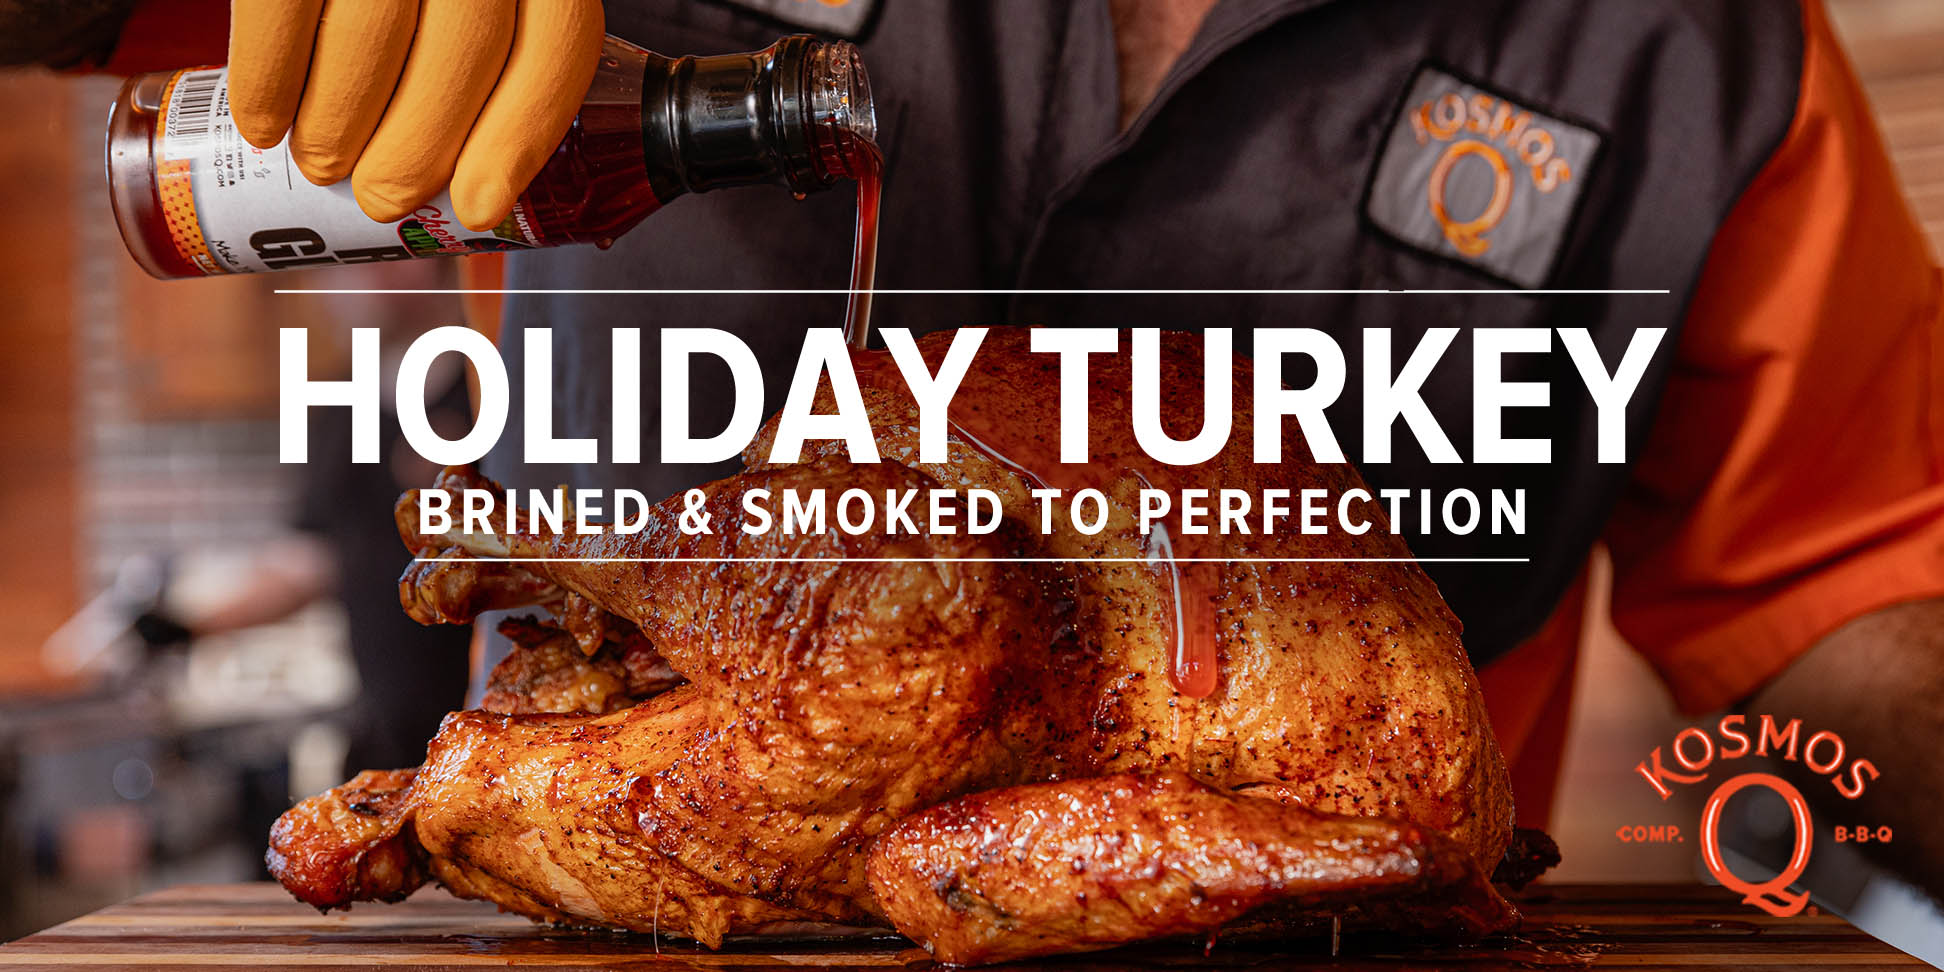 Turkey Brining Kit — Adventure Kitchen